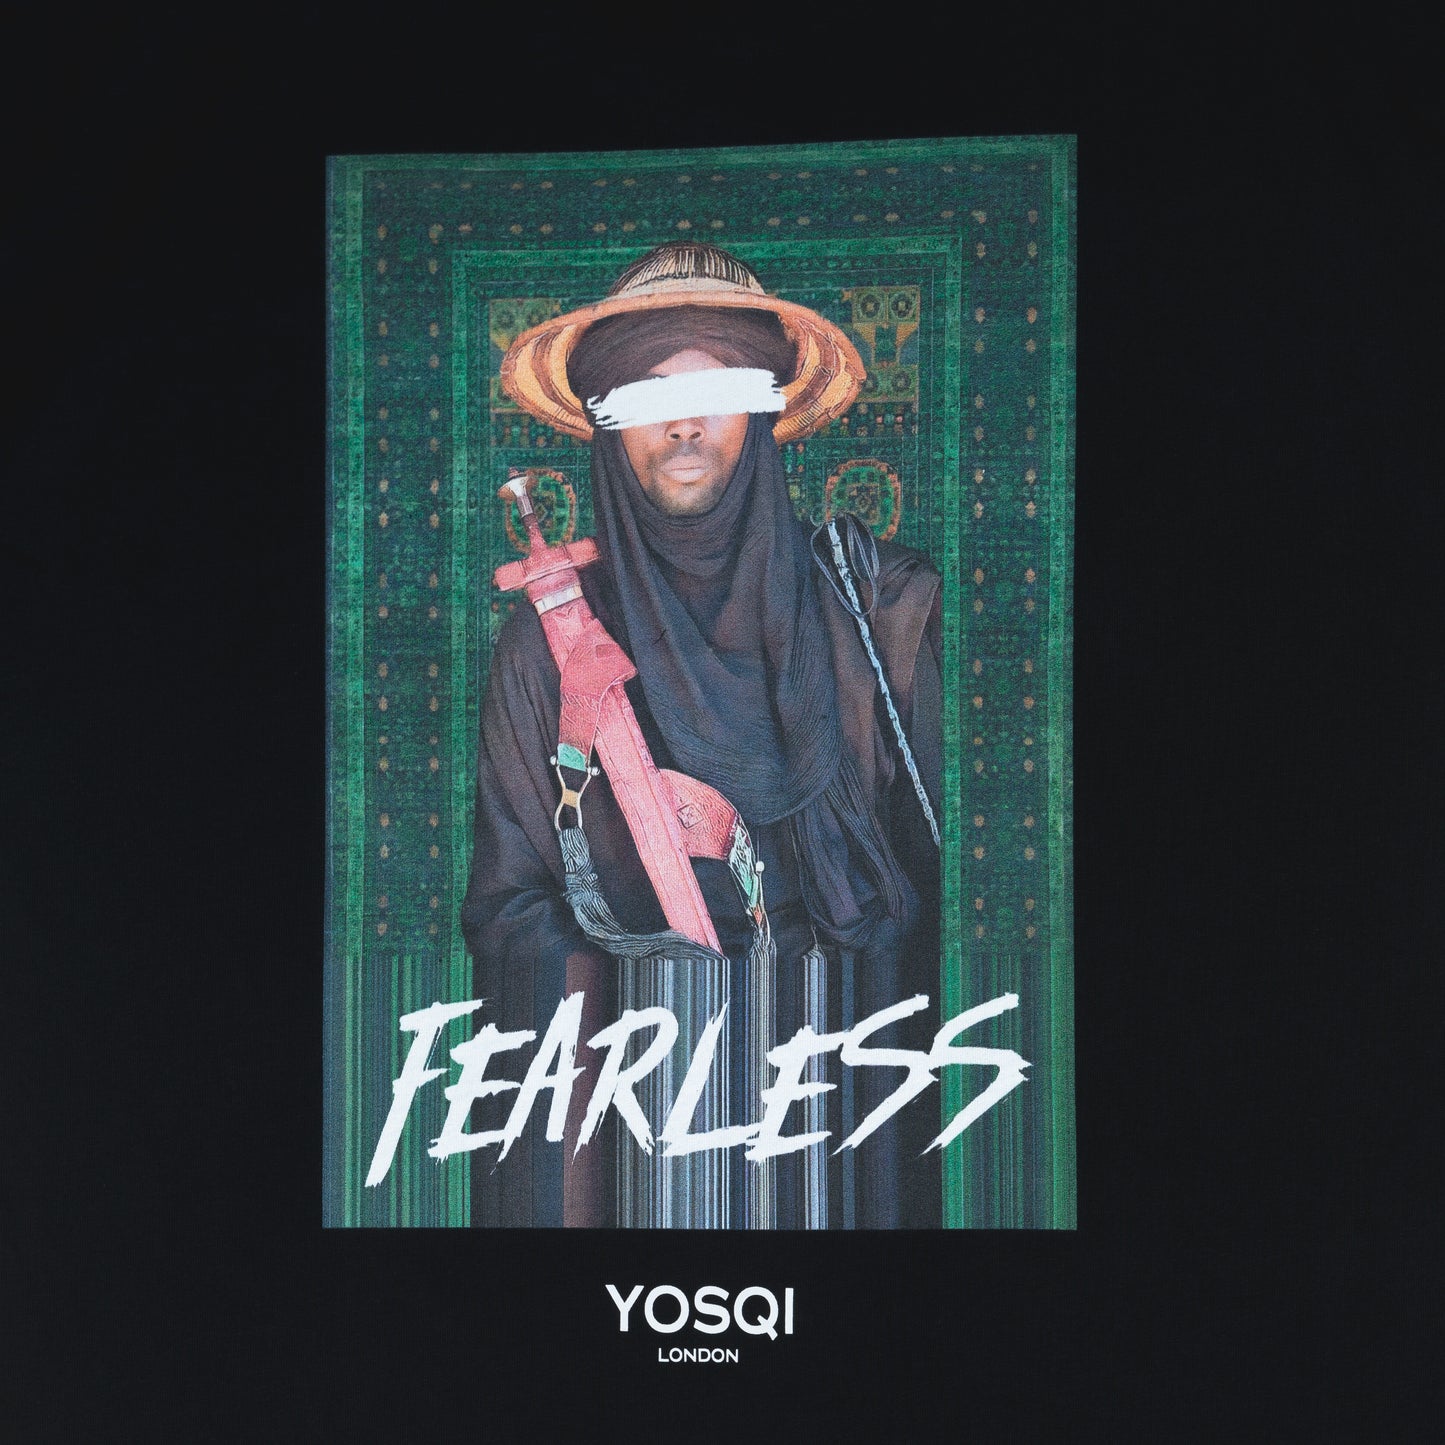 Yosqi 'Fearless' tee